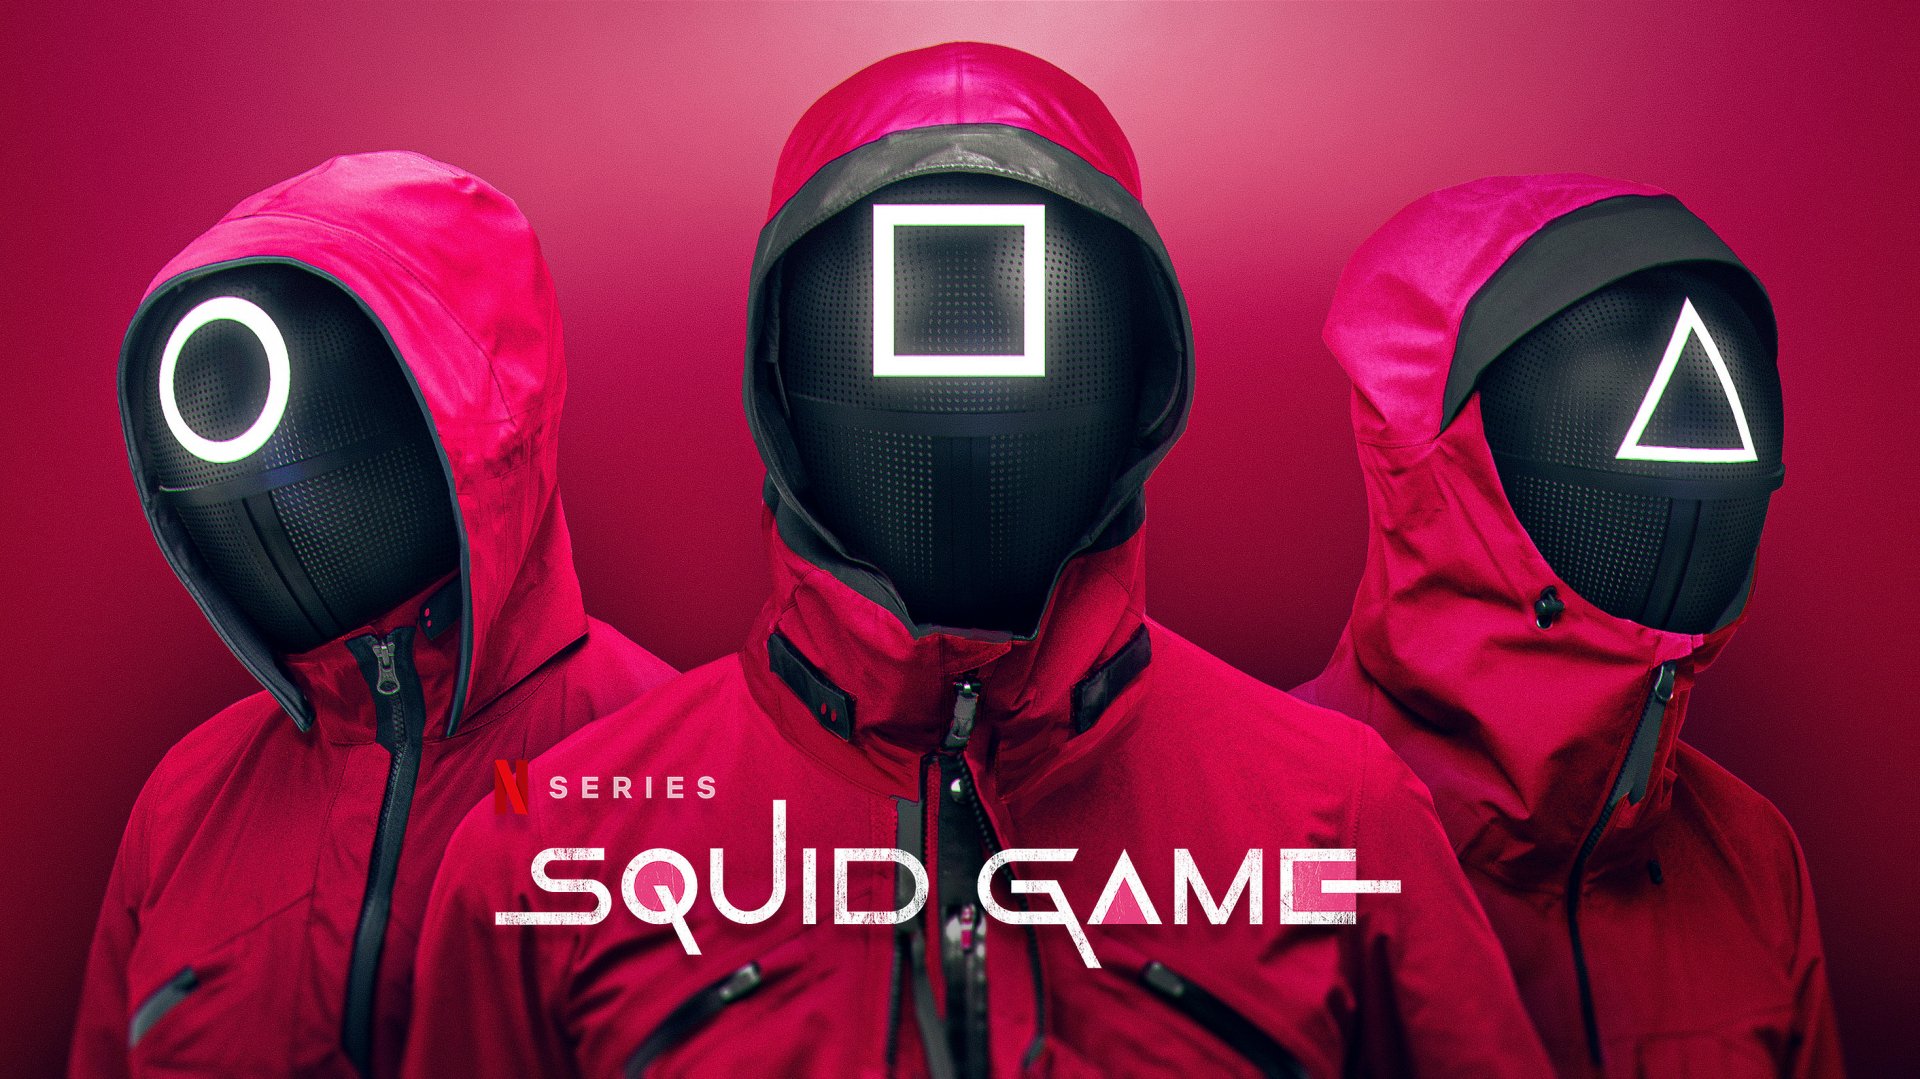 Hình nền Squid Game là tuyệt vời cho các fan hâm mộ của bộ phim gây cấn này. Miễn phí và chỉ mất một vài giây để tải xuống, bạn sẽ bị cuốn hút vào thế giới giải trí đầy thử thách của Squid Game. Hãy tải ngay hình nền Squid Game này để có một không gian làm việc hoàn toàn mới và độc đáo.